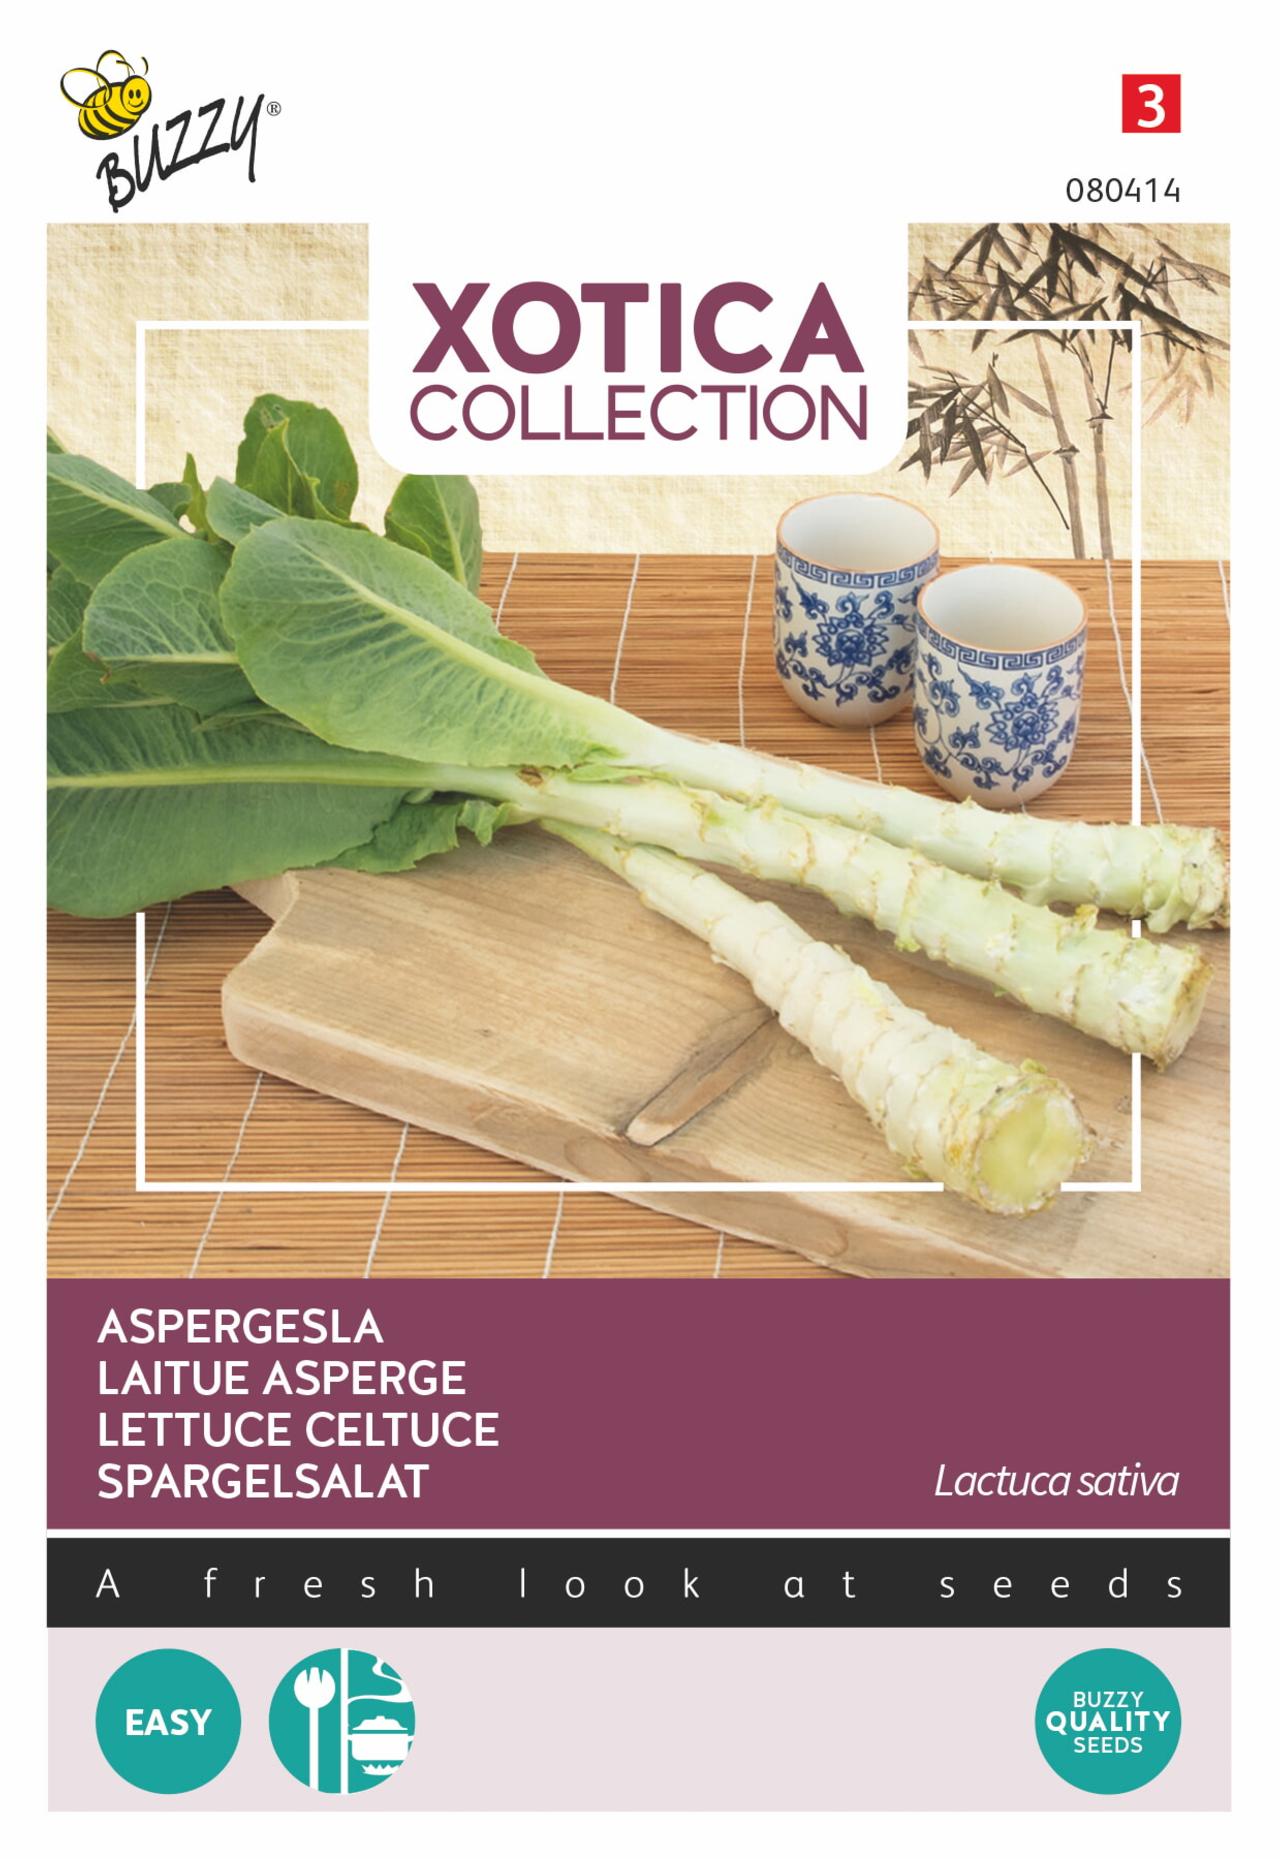 Lactuca sativa 'Aspergesla' plant